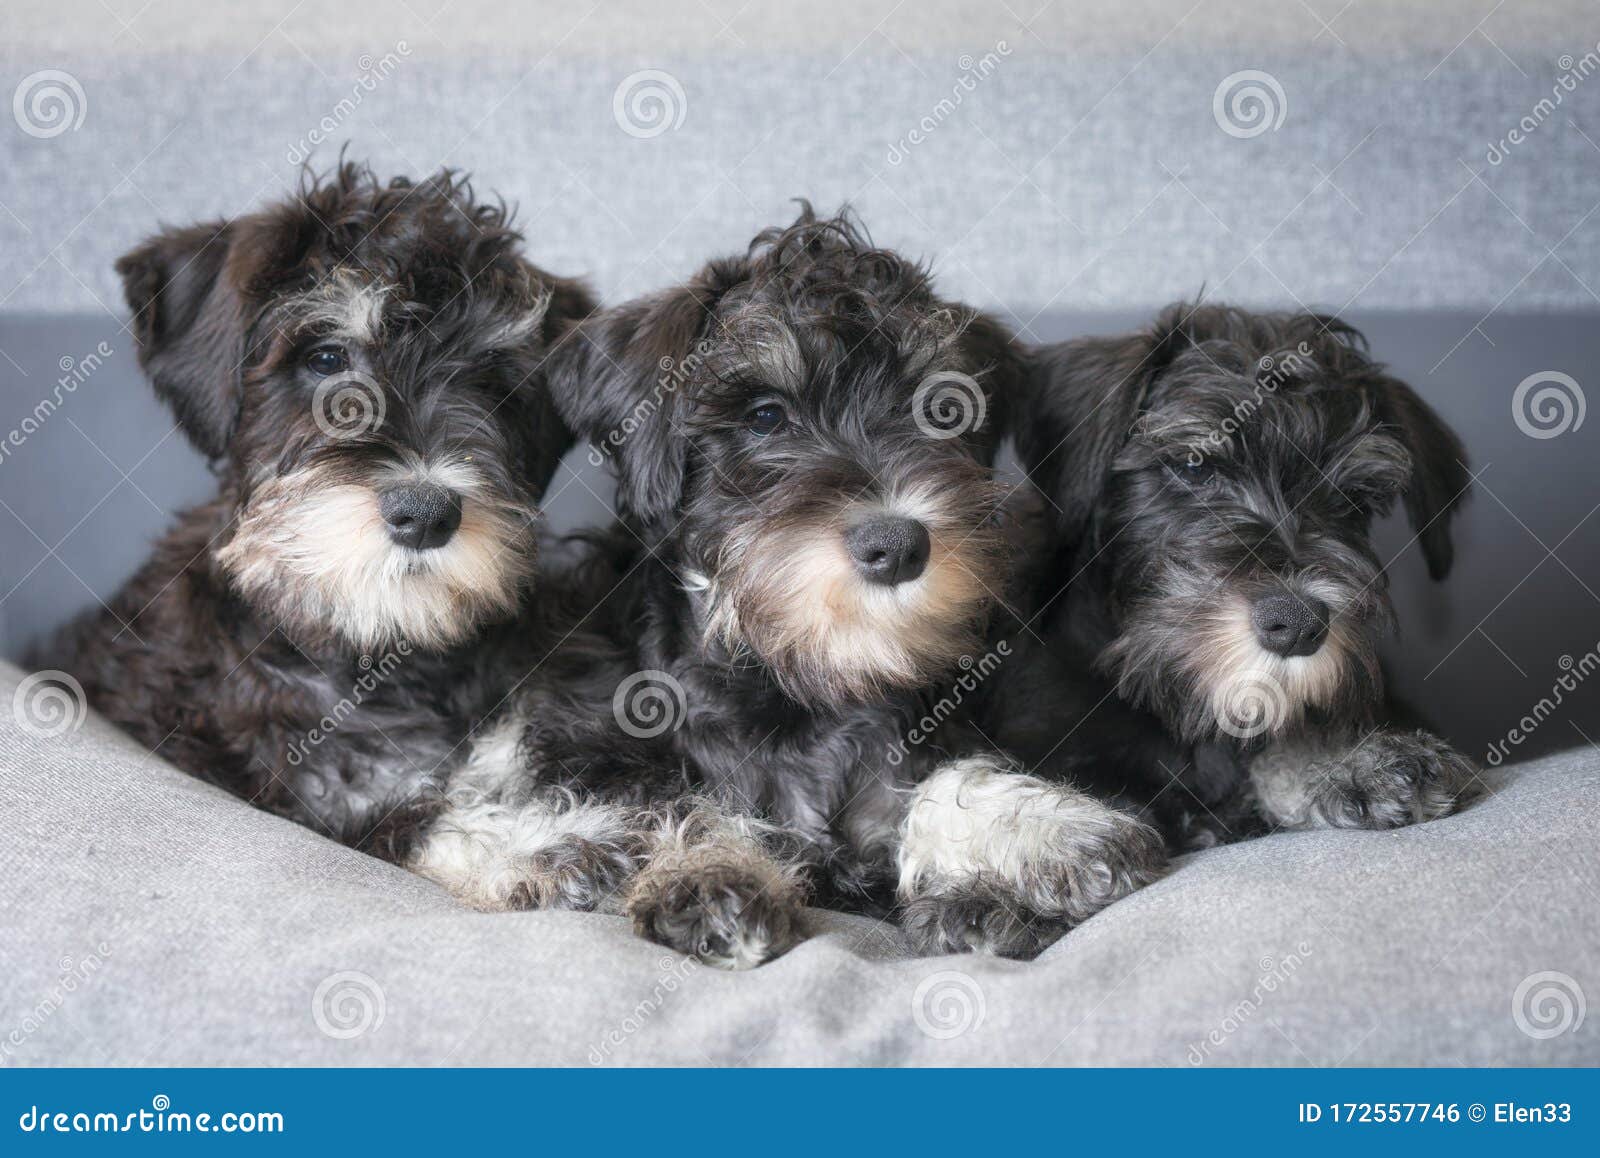 Los Cachorros Schnauzer En Miniatura Están Sobre Foto de archivo - Imagen  de animal, mirada: 172557746